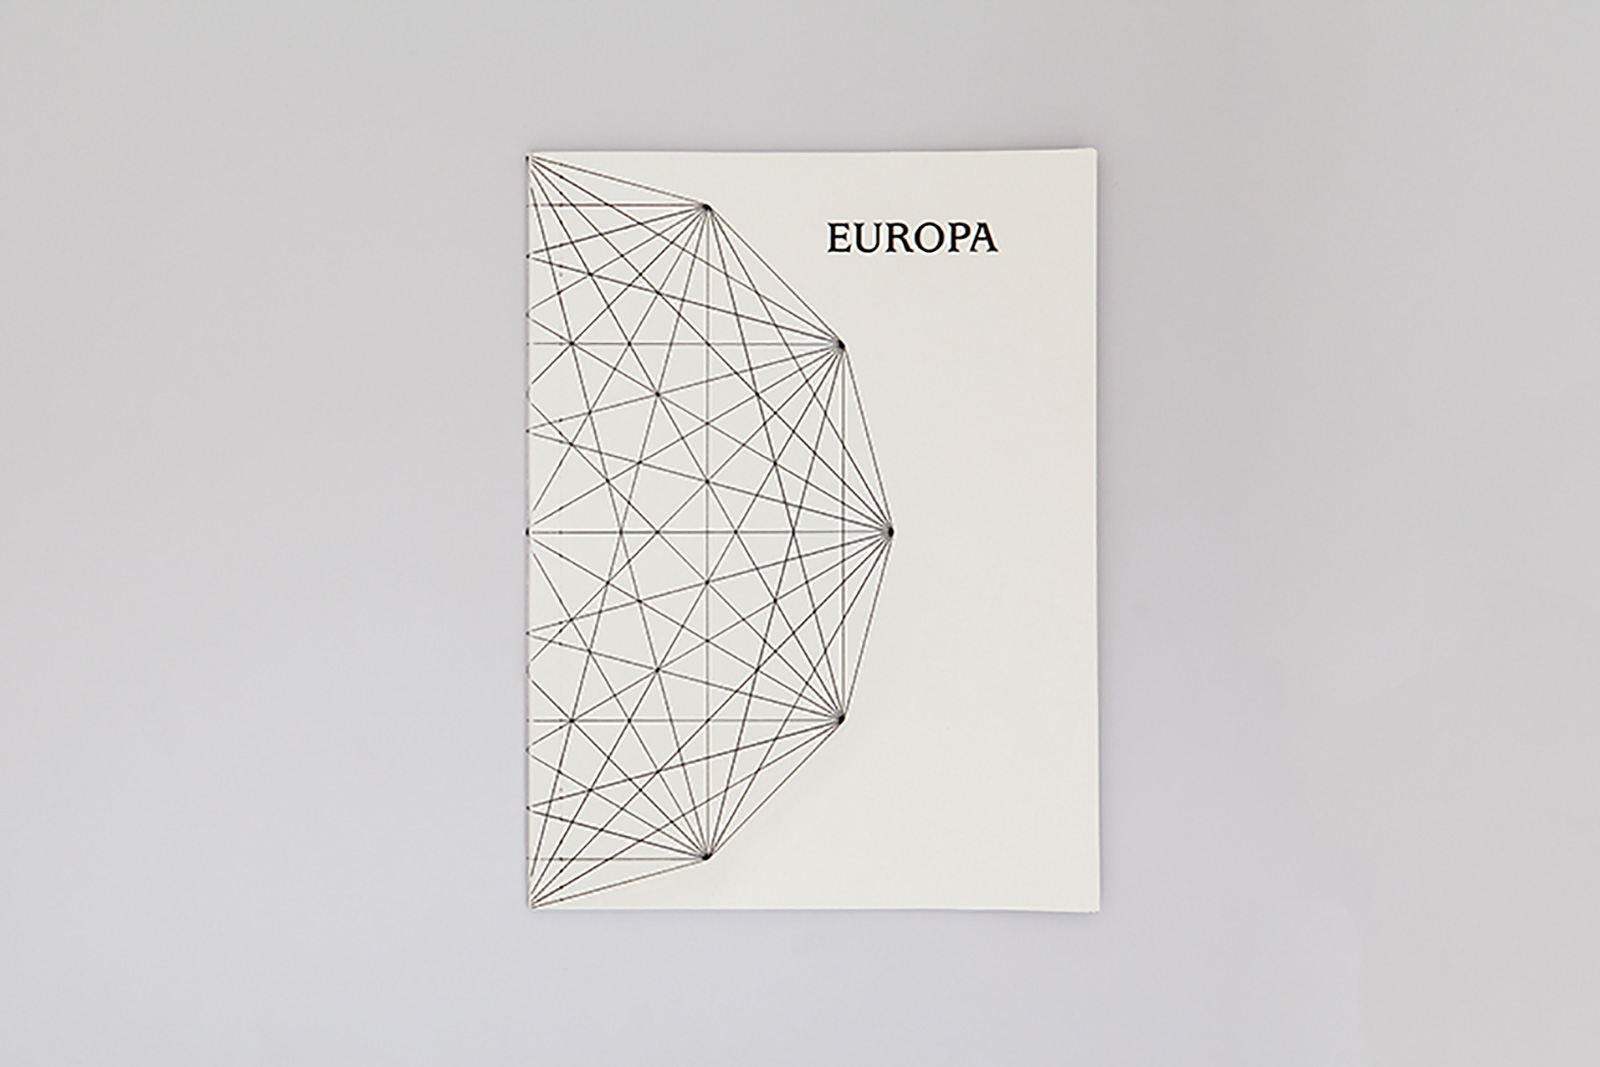 Europa and eu